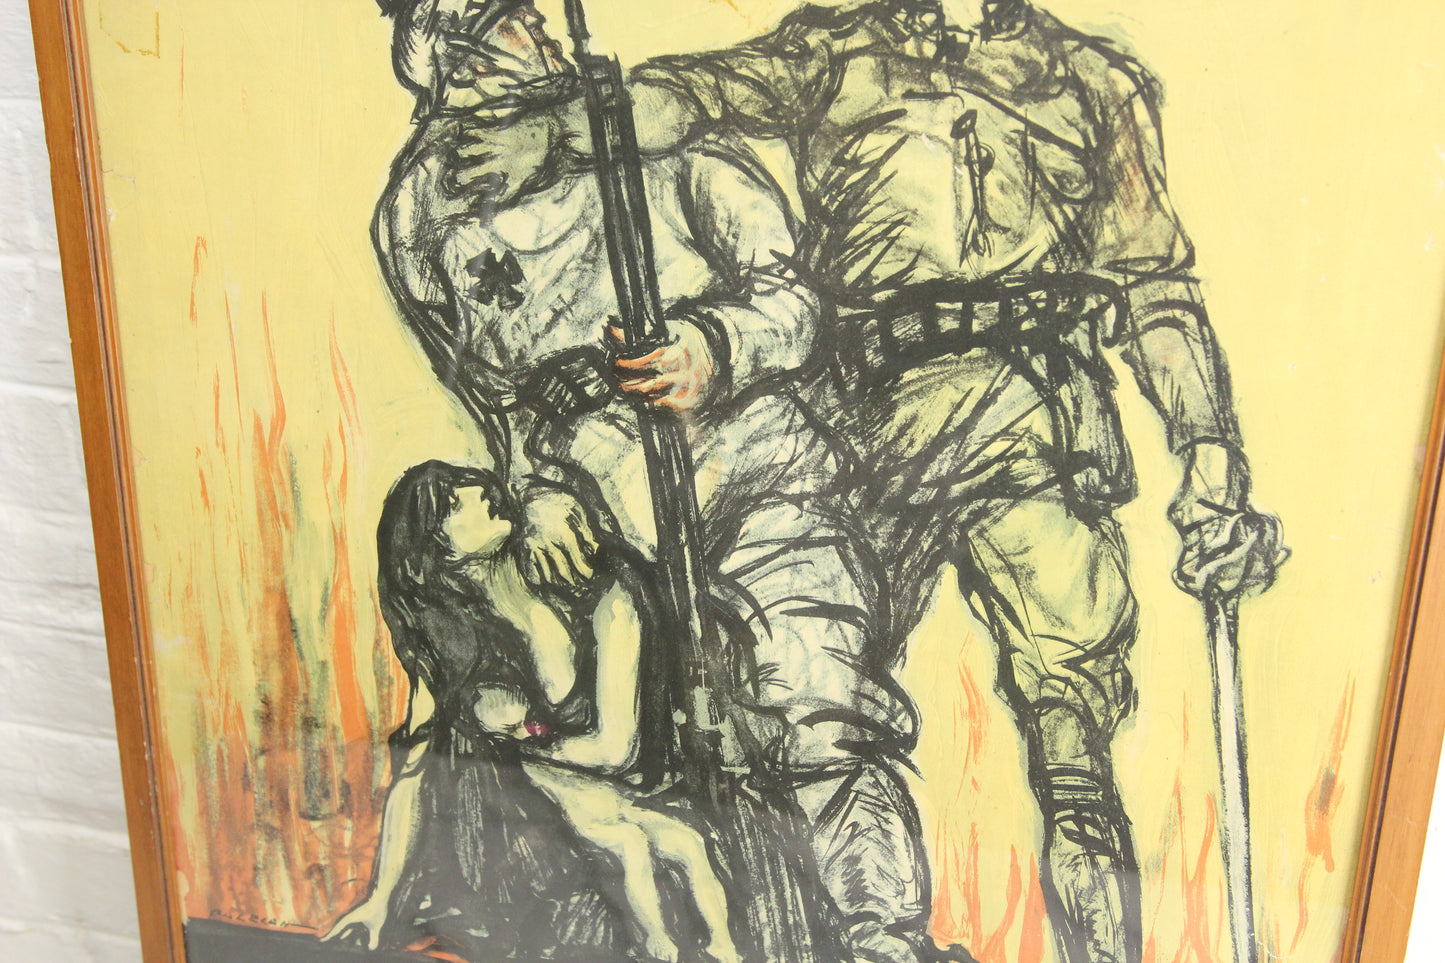 Halt the Hun! U.S. War Bonds World War I Framed Lithograph Propaganda Poster - 21.25 x 30.5"